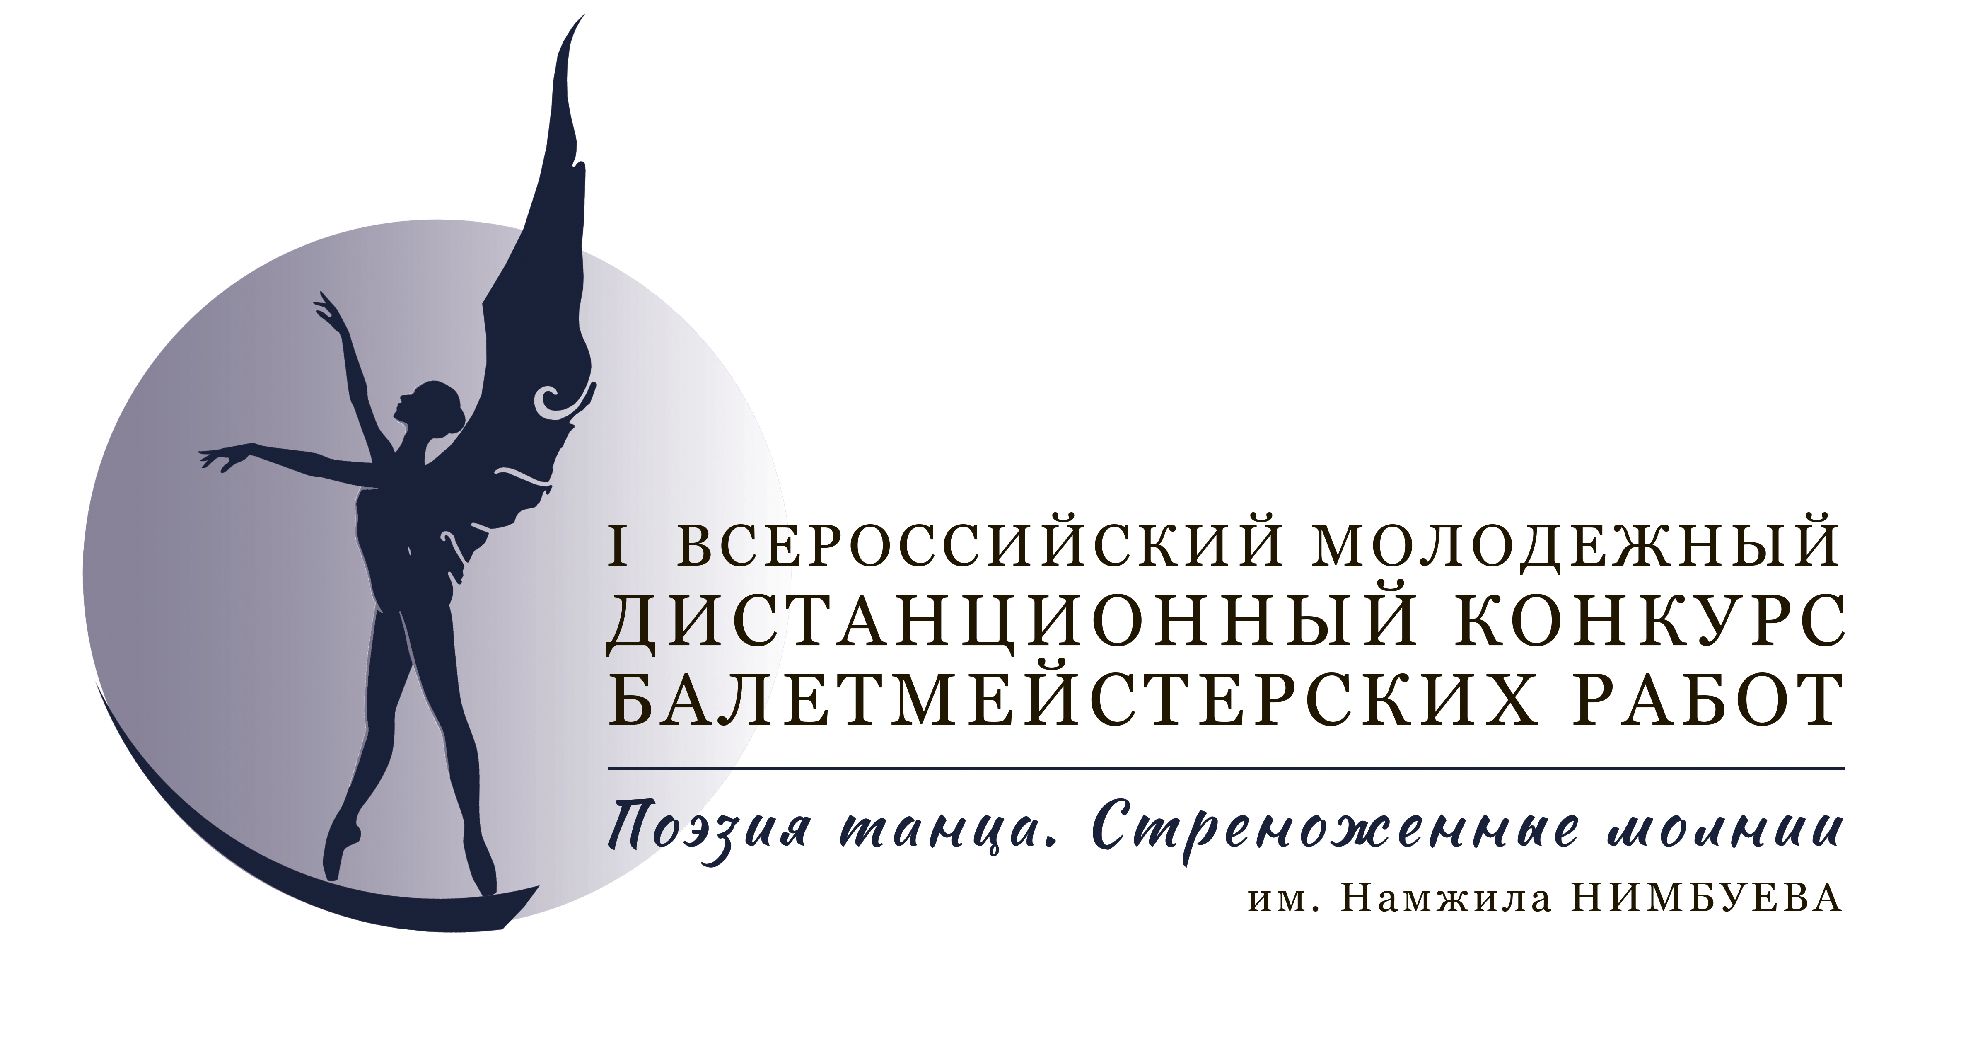 БРХК объявляет  I Всероссийский молодёжный дистанционный  конкурс балетмейстерских работ 